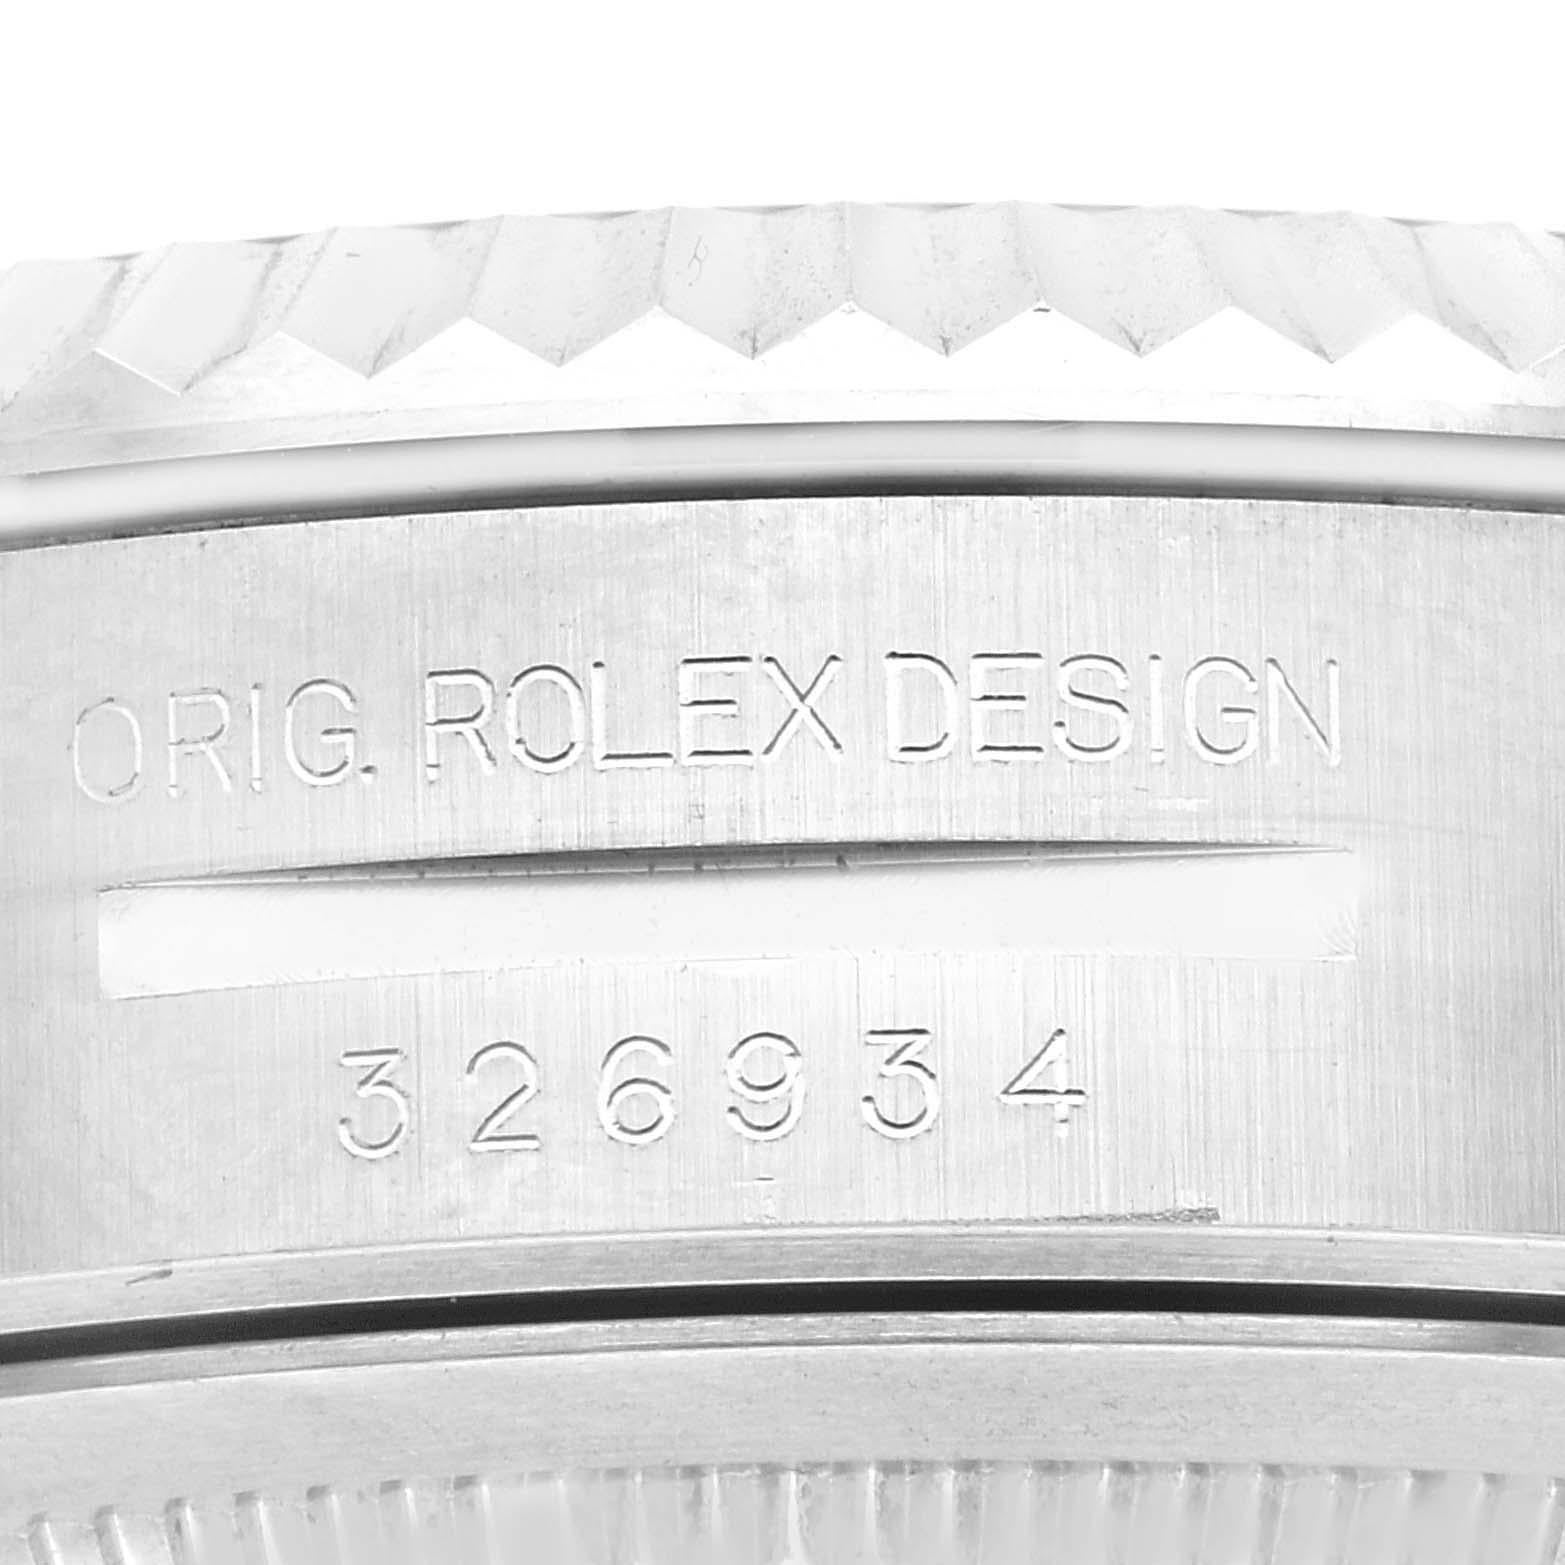 Rolex Sky-Dweller Blue Dial Steel White Gold Mens Watch 326934 Box Card. Mouvement automatique à remontage automatique, officiellement certifié chronomètre. Double fuseau horaire, calendrier annuel. Ressort parachromatique bleu paramagnétique.